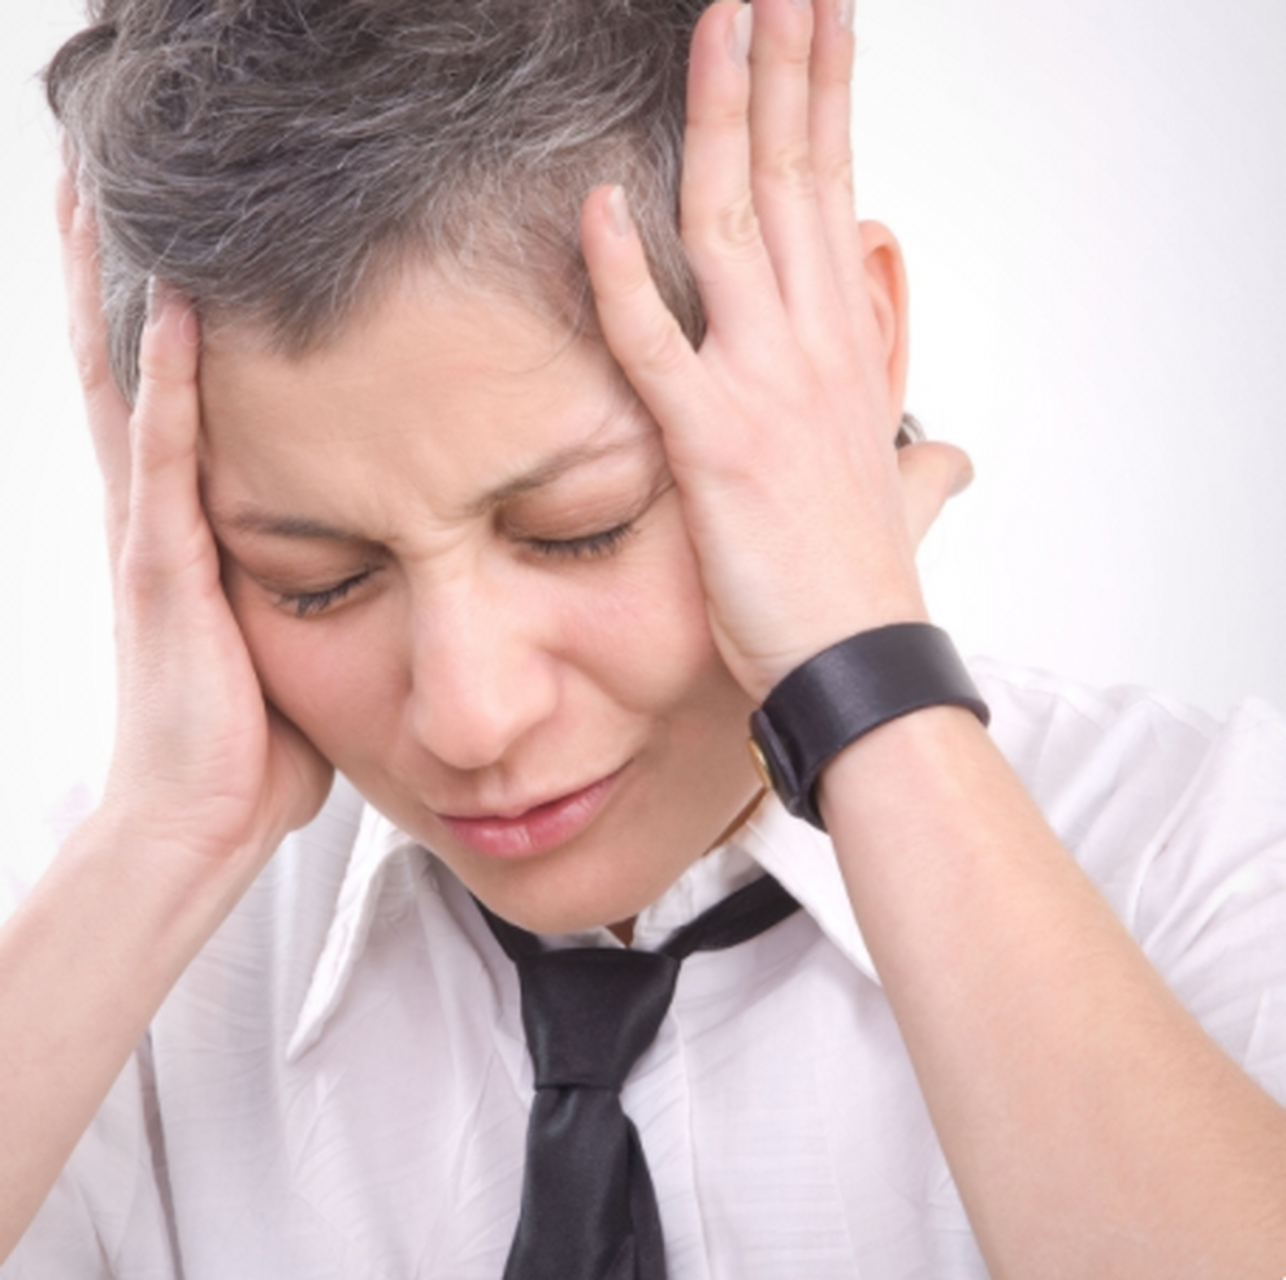 偏头痛是一个长期发作的症状,平时可以喝些仁芷天舒